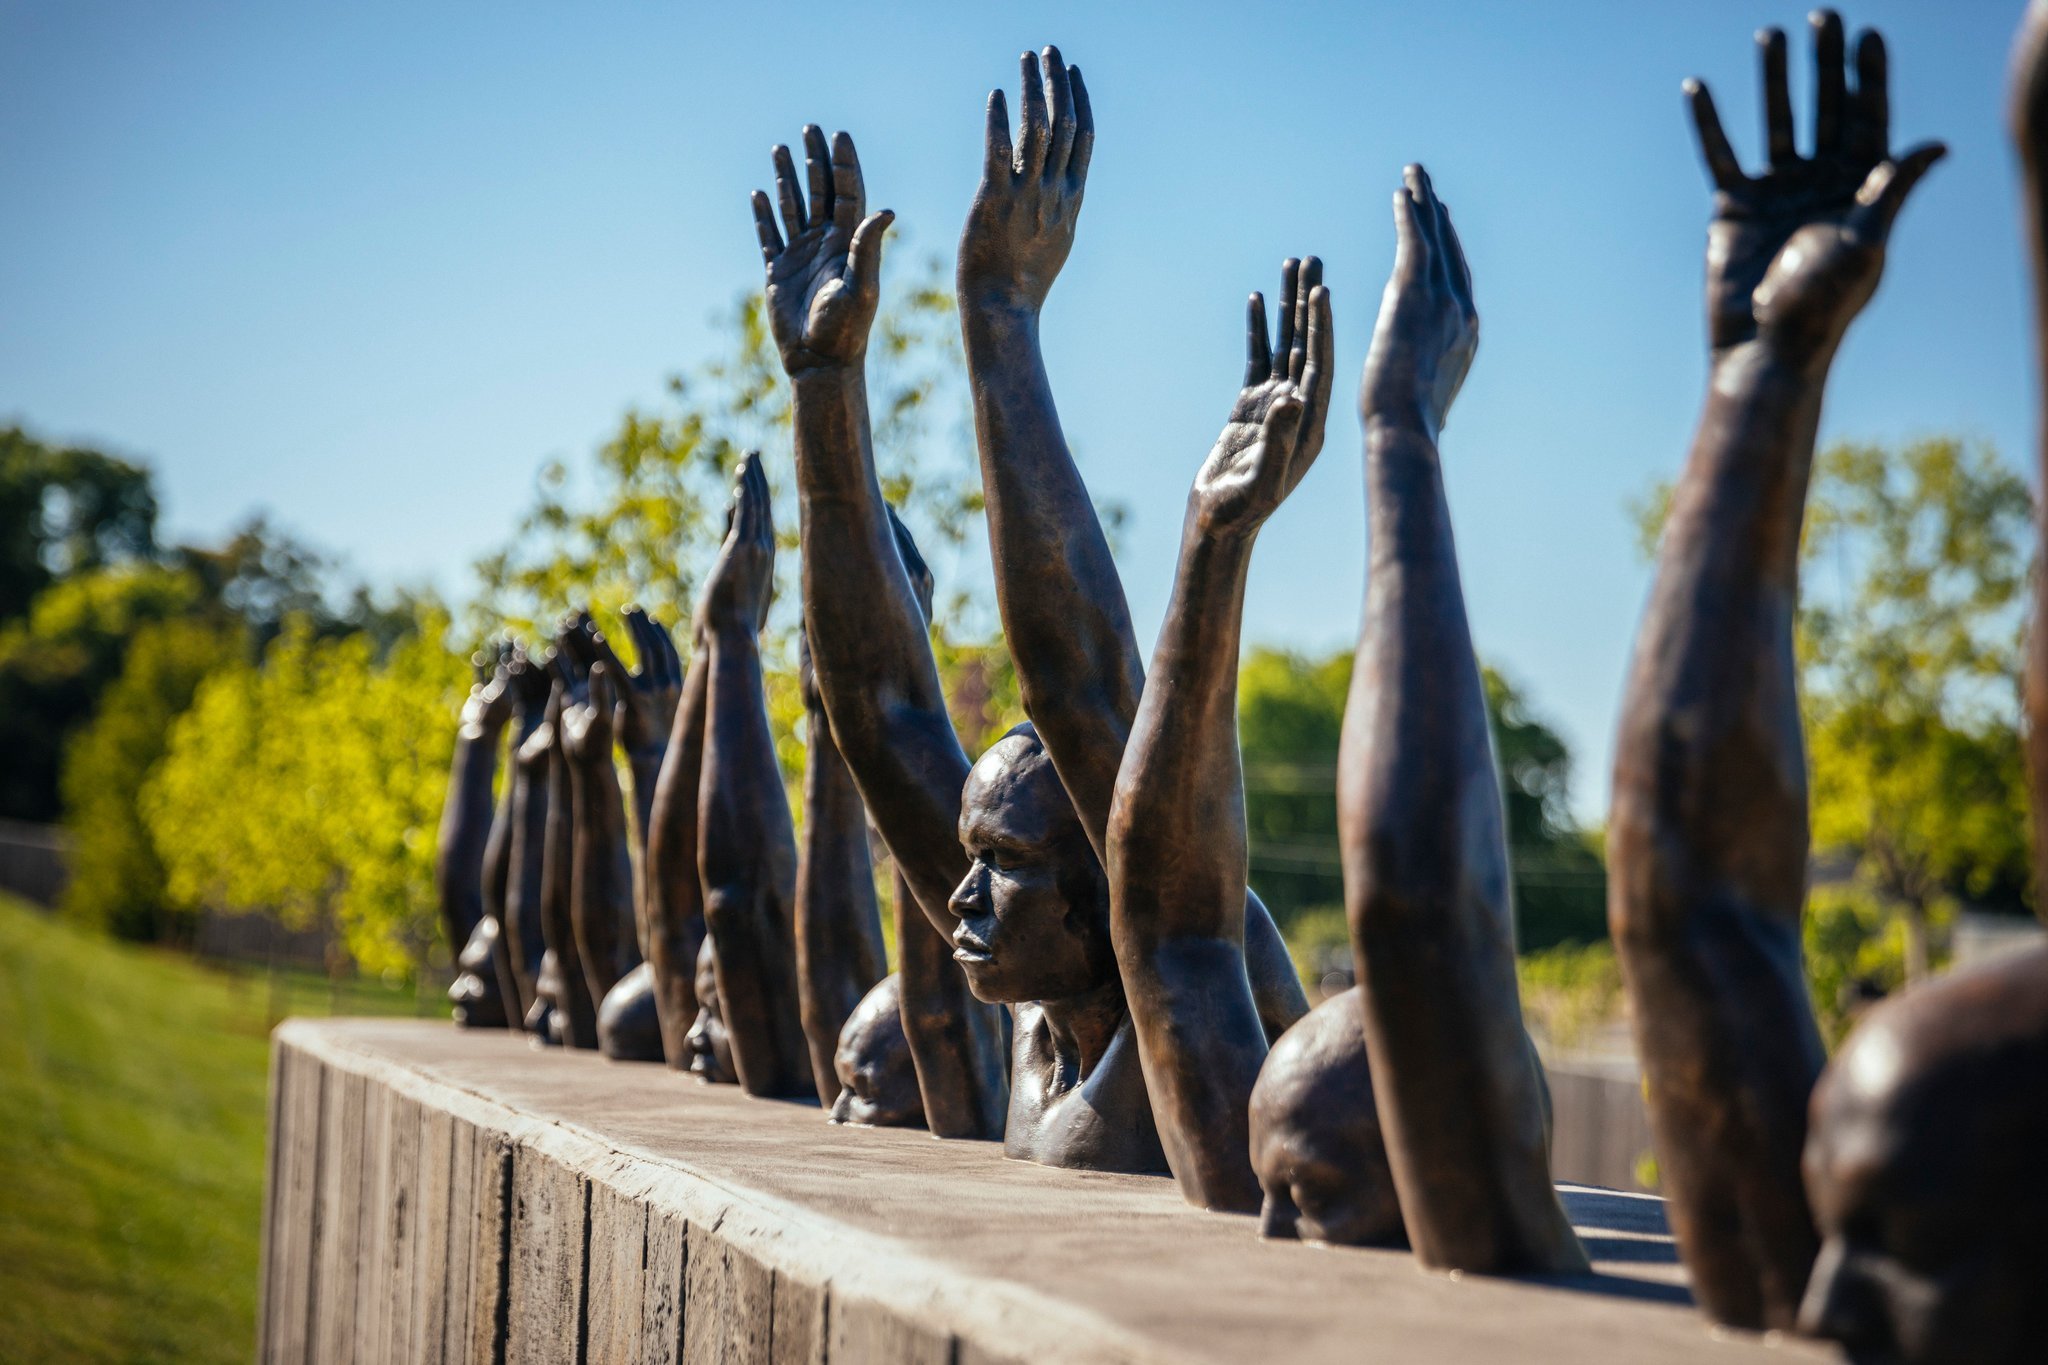 En mémoire aux 4 400 Afro-Américains morts lynchés entre 1877 et 1950, un Mémorial voit le jour dans l'Alabama ! Par Pauline M. (+Vidéo sur Bidfoly.com)                          Merlin_137214450_b848ae24-7352-42fb-8abe-ead707ca2462-superJumbo